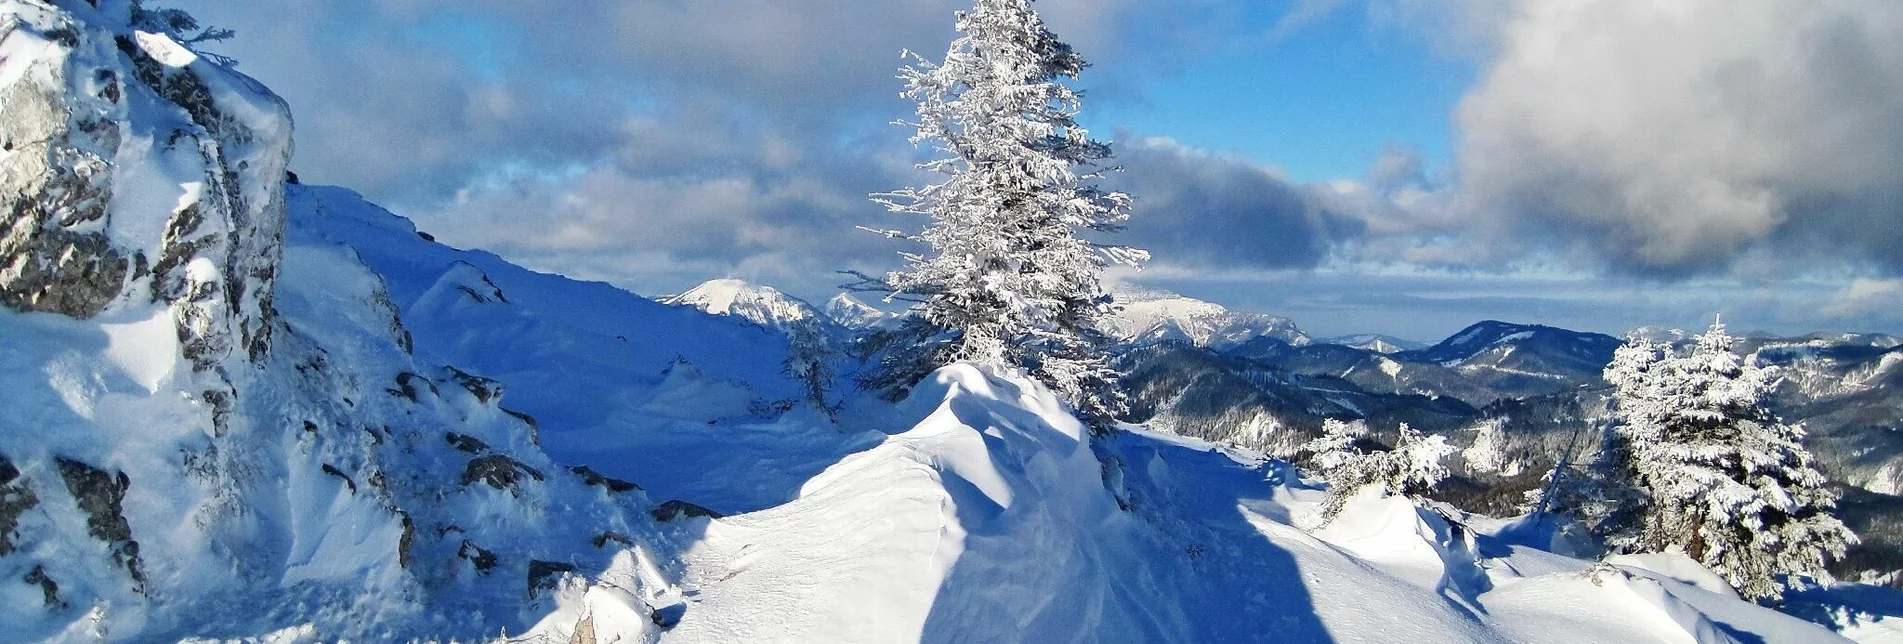 Skitour Skitour auf die Wildalpe von Lahnsattel Ort - Touren-Impression #1 | © ÖAV Sektion Mariazellerland